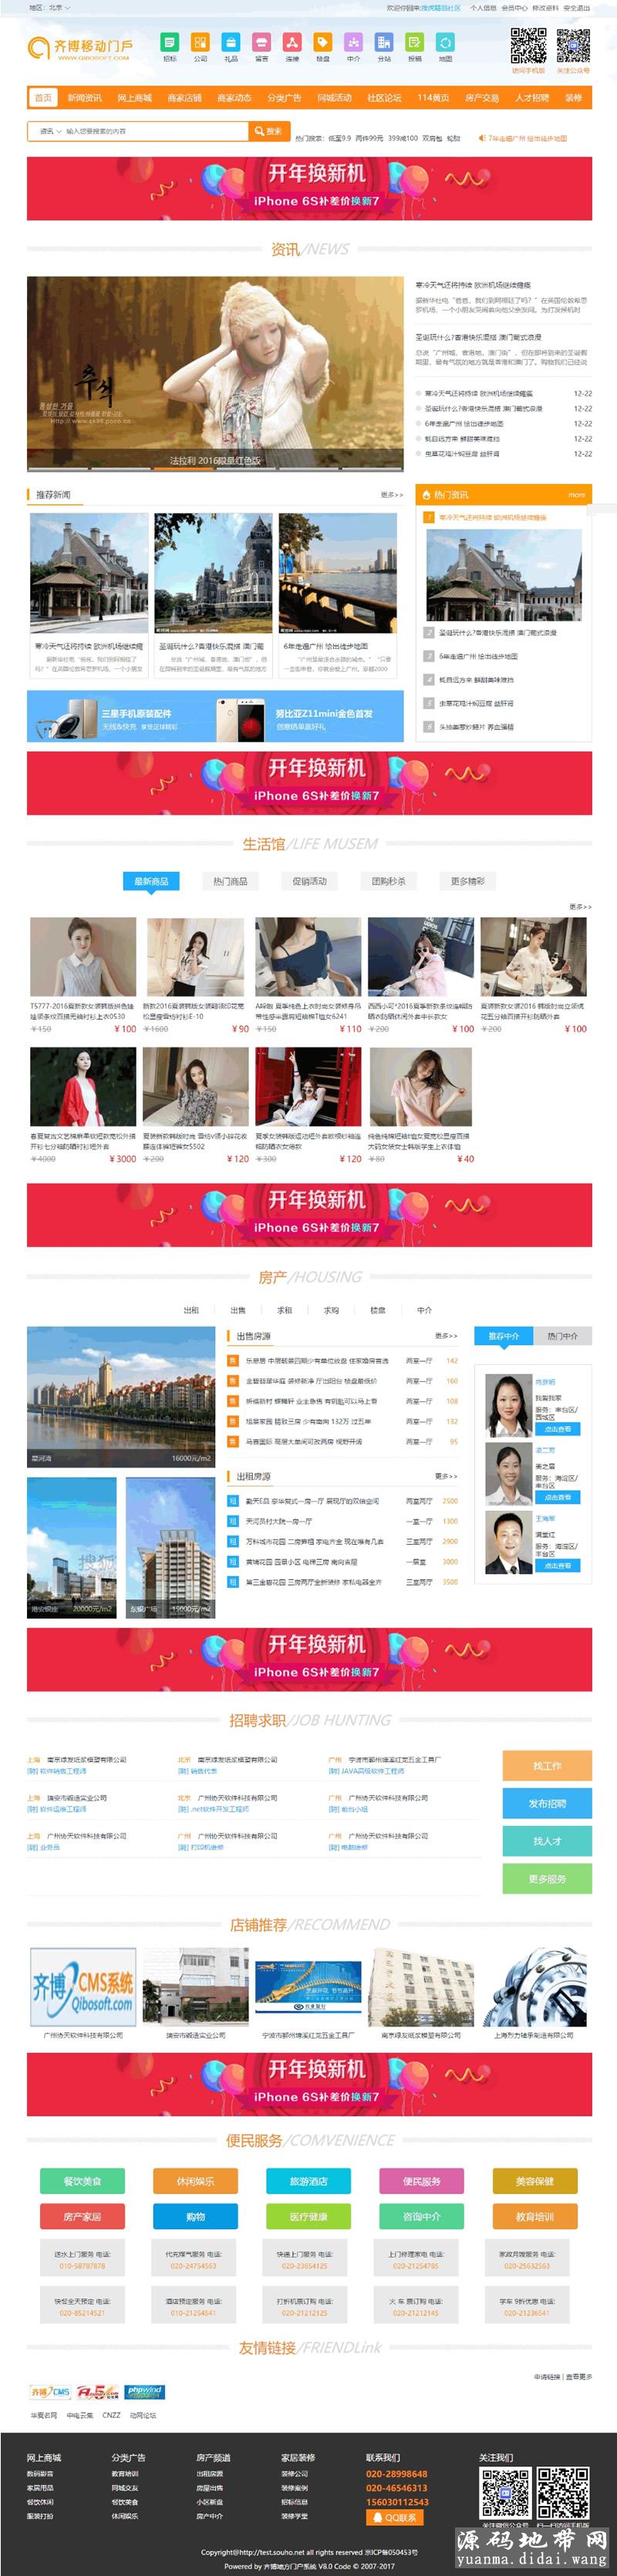 齐博地方门户 v8.0 城市商业版网站源码